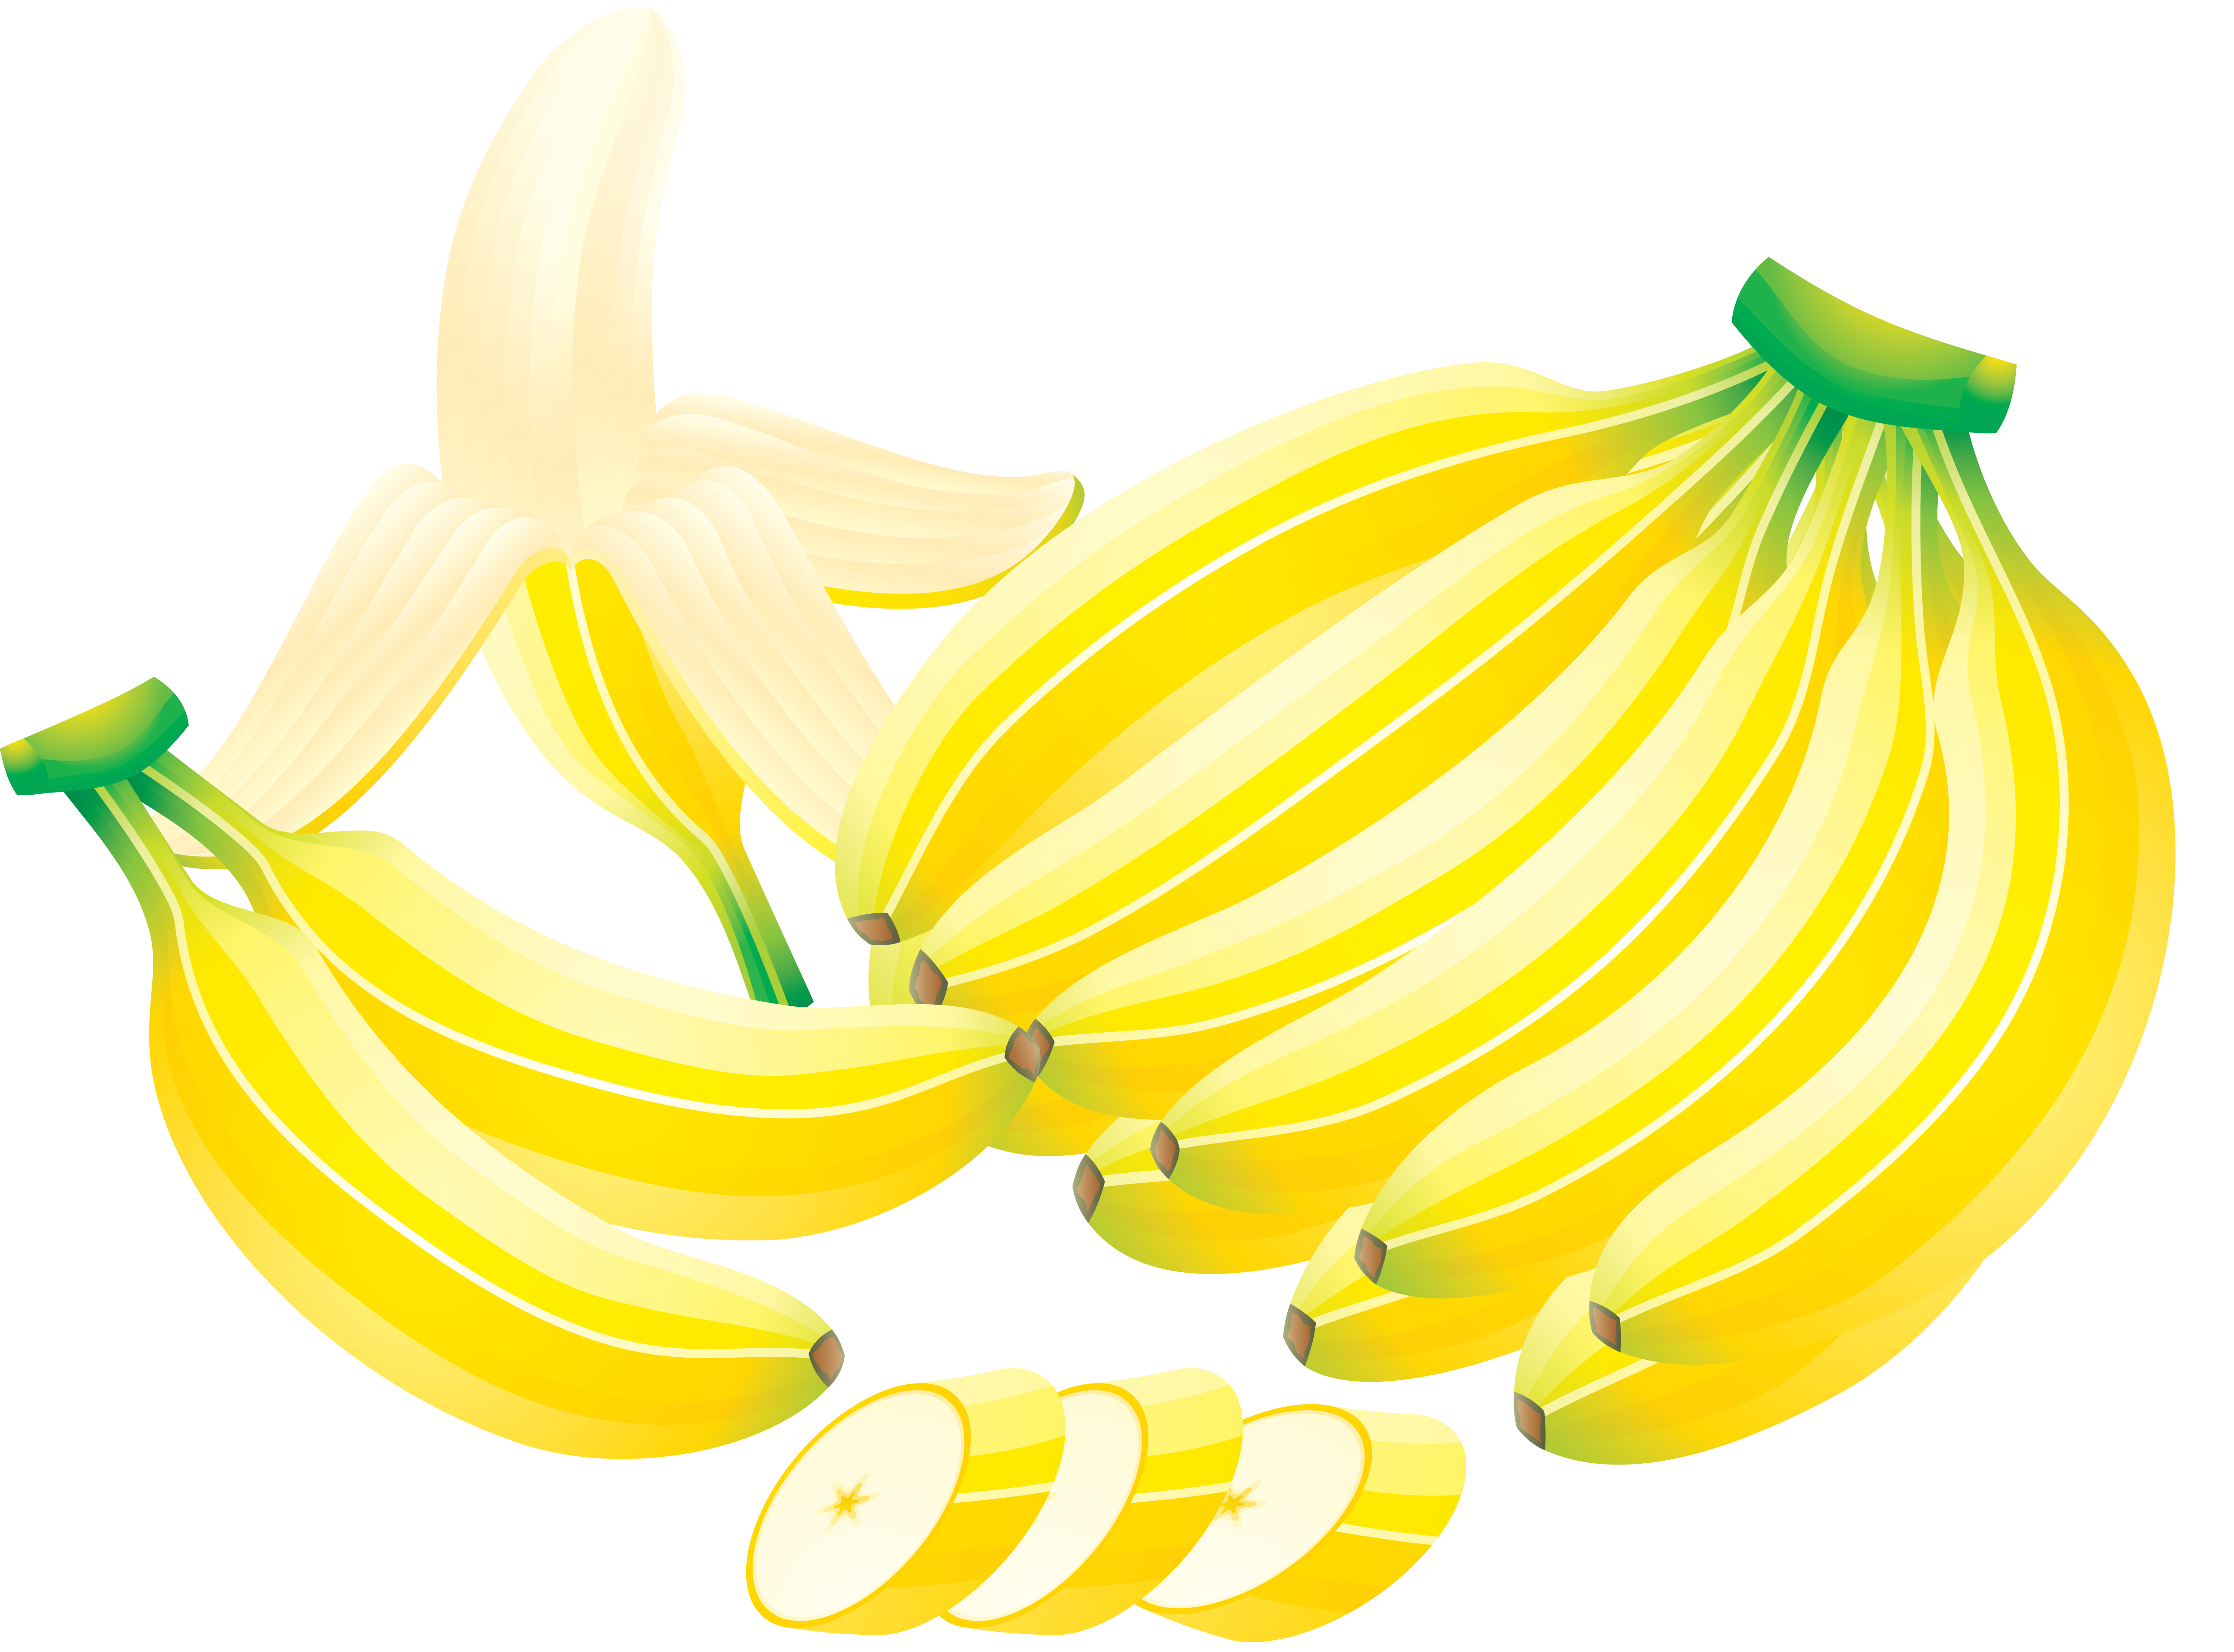 用刀切开的香蕉